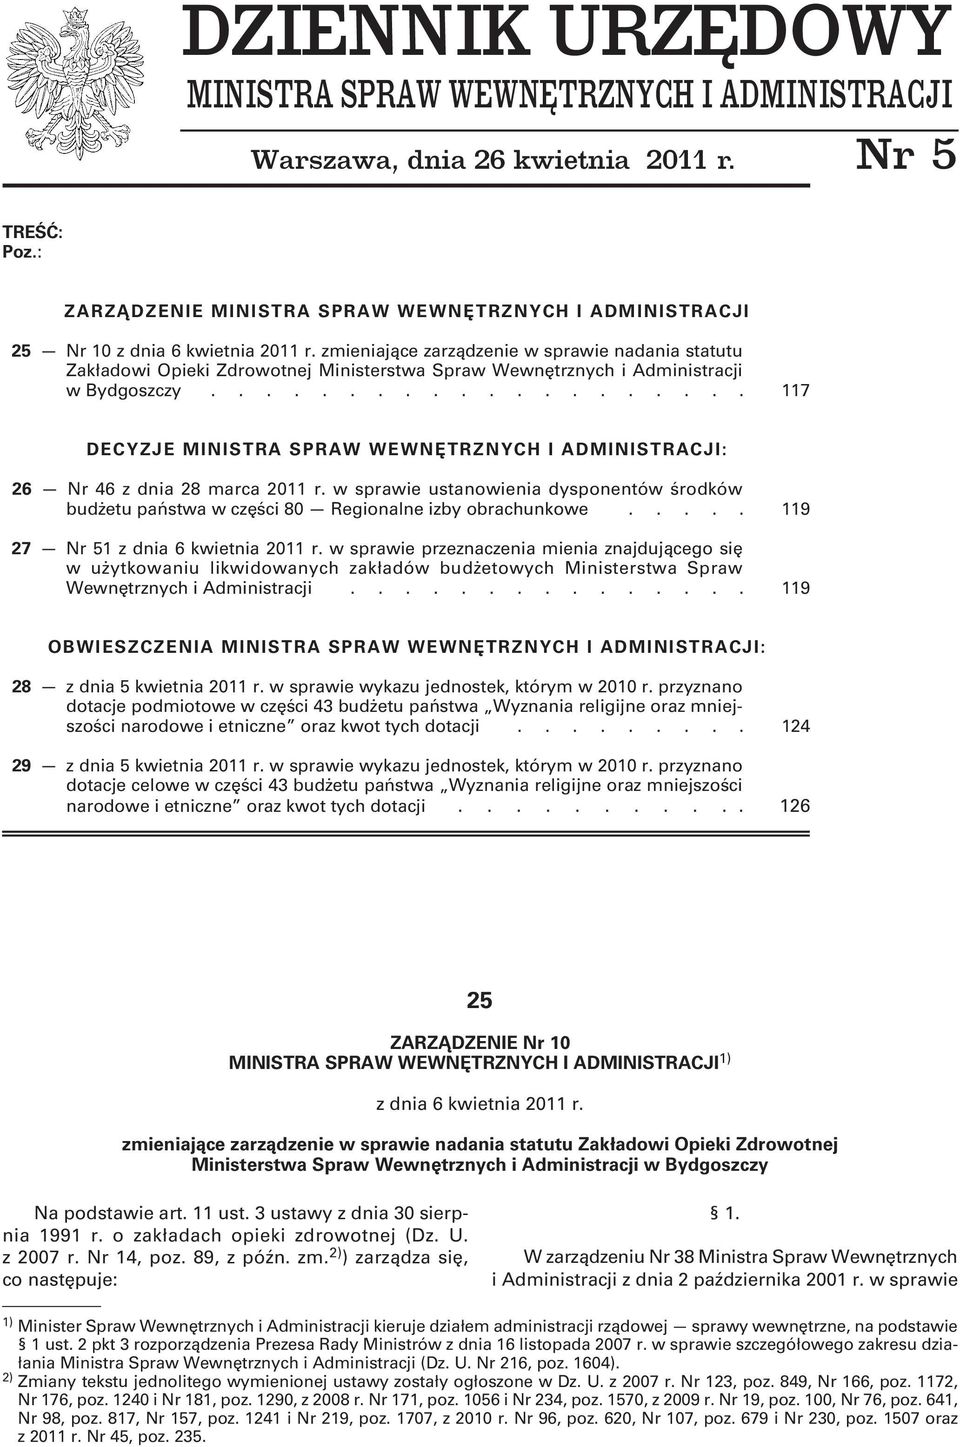 zmieniające zarządzenie w sprawie nadania statutu Zakładowi Opieki Zdrowotnej Ministerstwa Spraw Wewnętrznych i Administracji w Bydgoszczy.